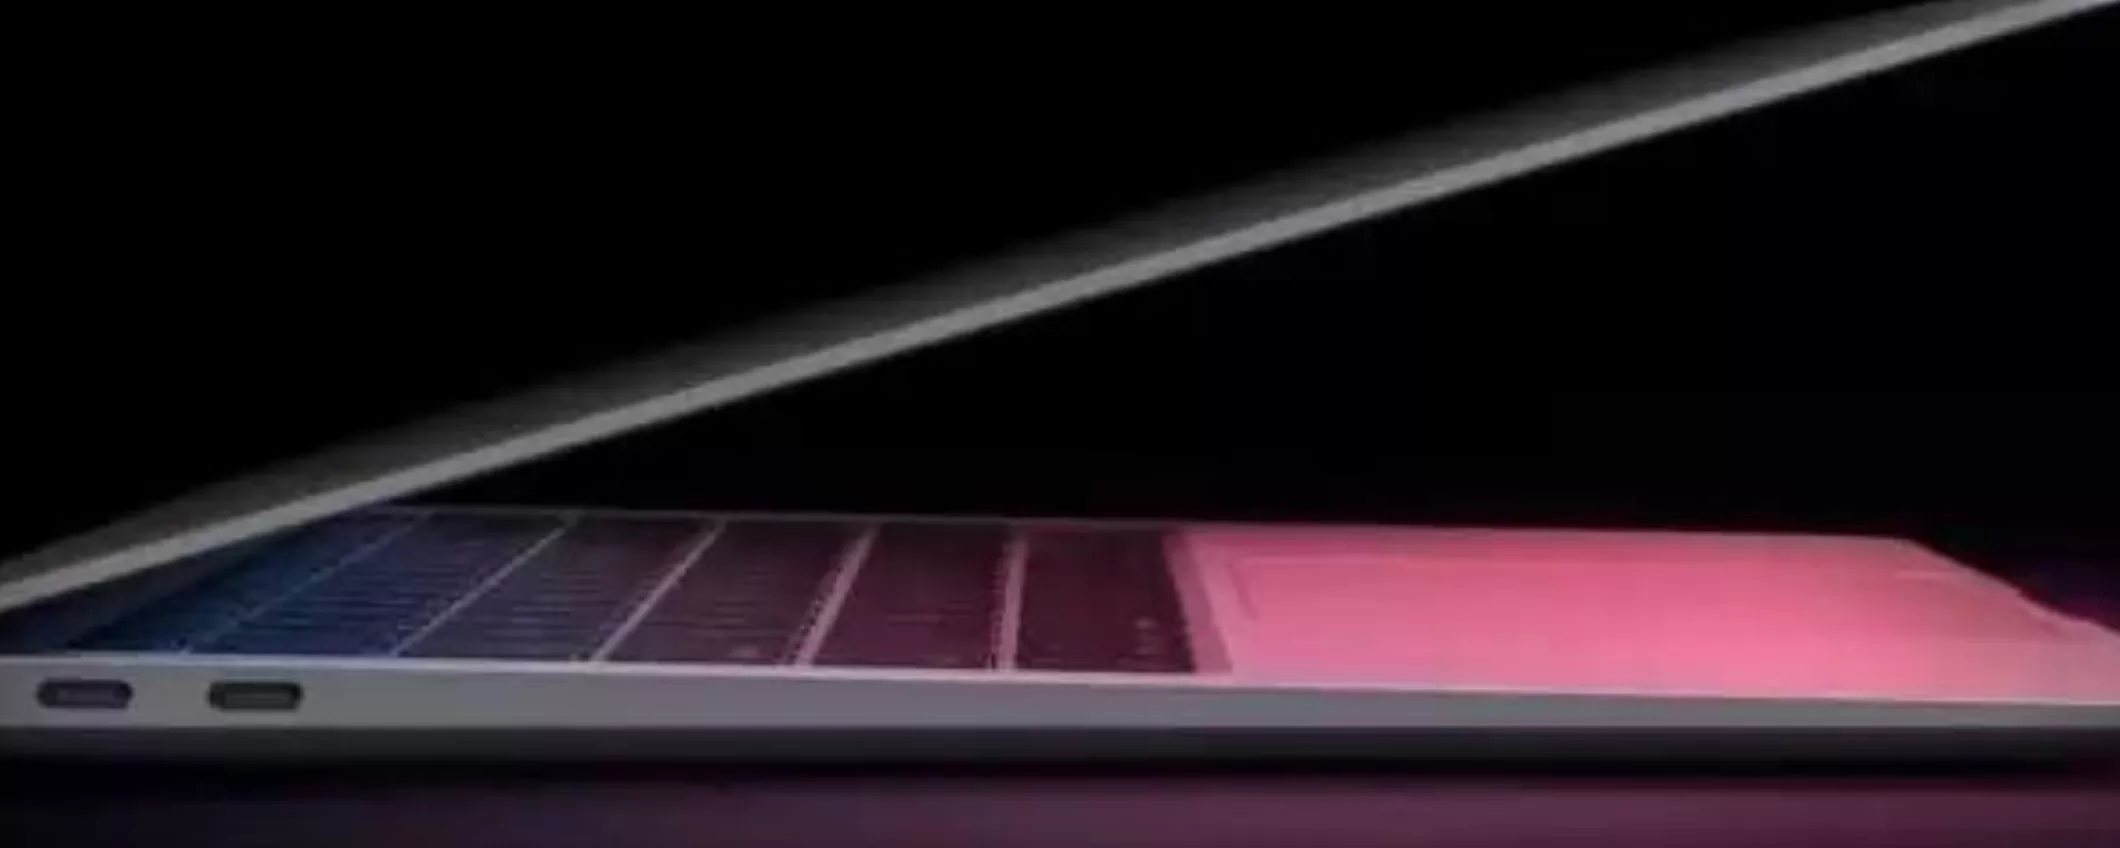 MacBook Air M1:  ricondizionato (come nuovo) lo paghi POCHISSIMO